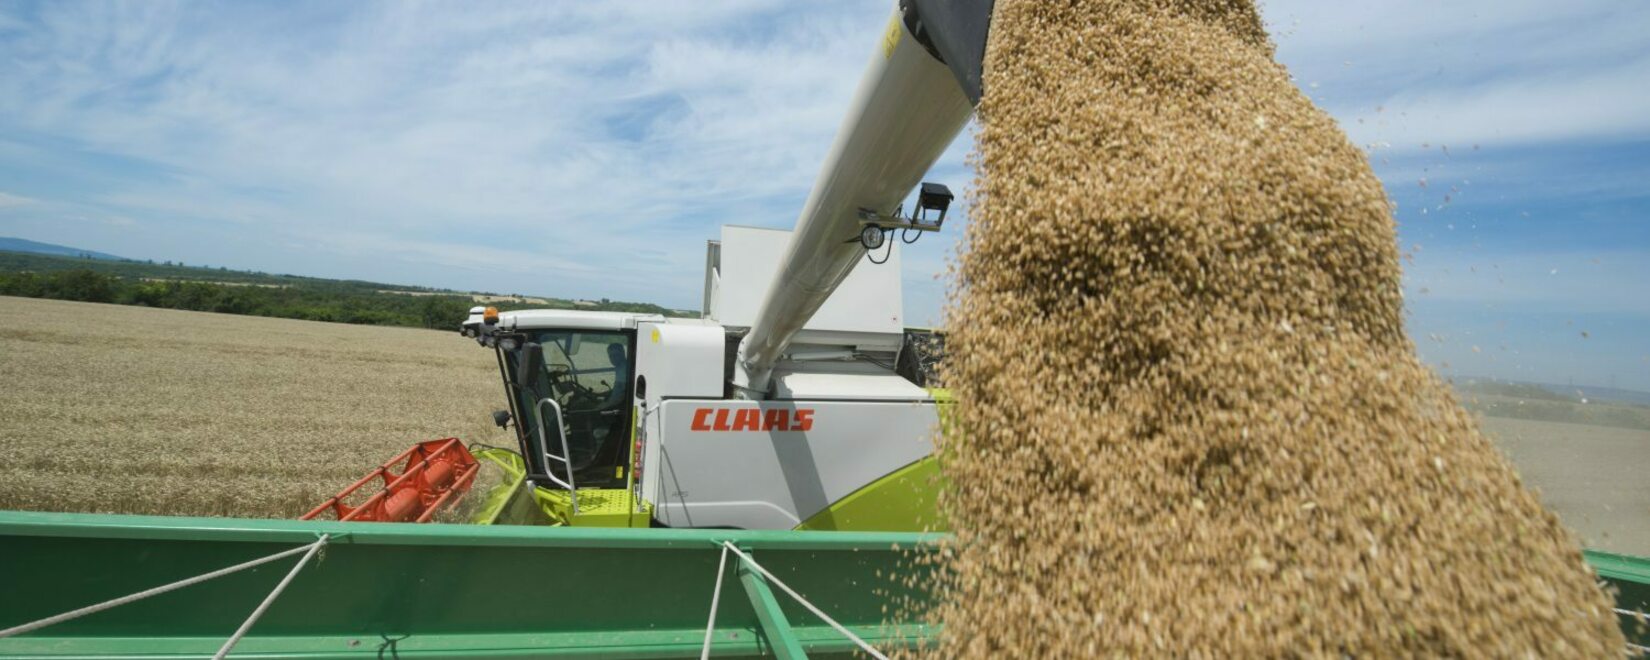 Ставка вывозной пошлины на ячмень снизится с 20 сентября. Пошлины на пшеницу и кукурузу вырастут